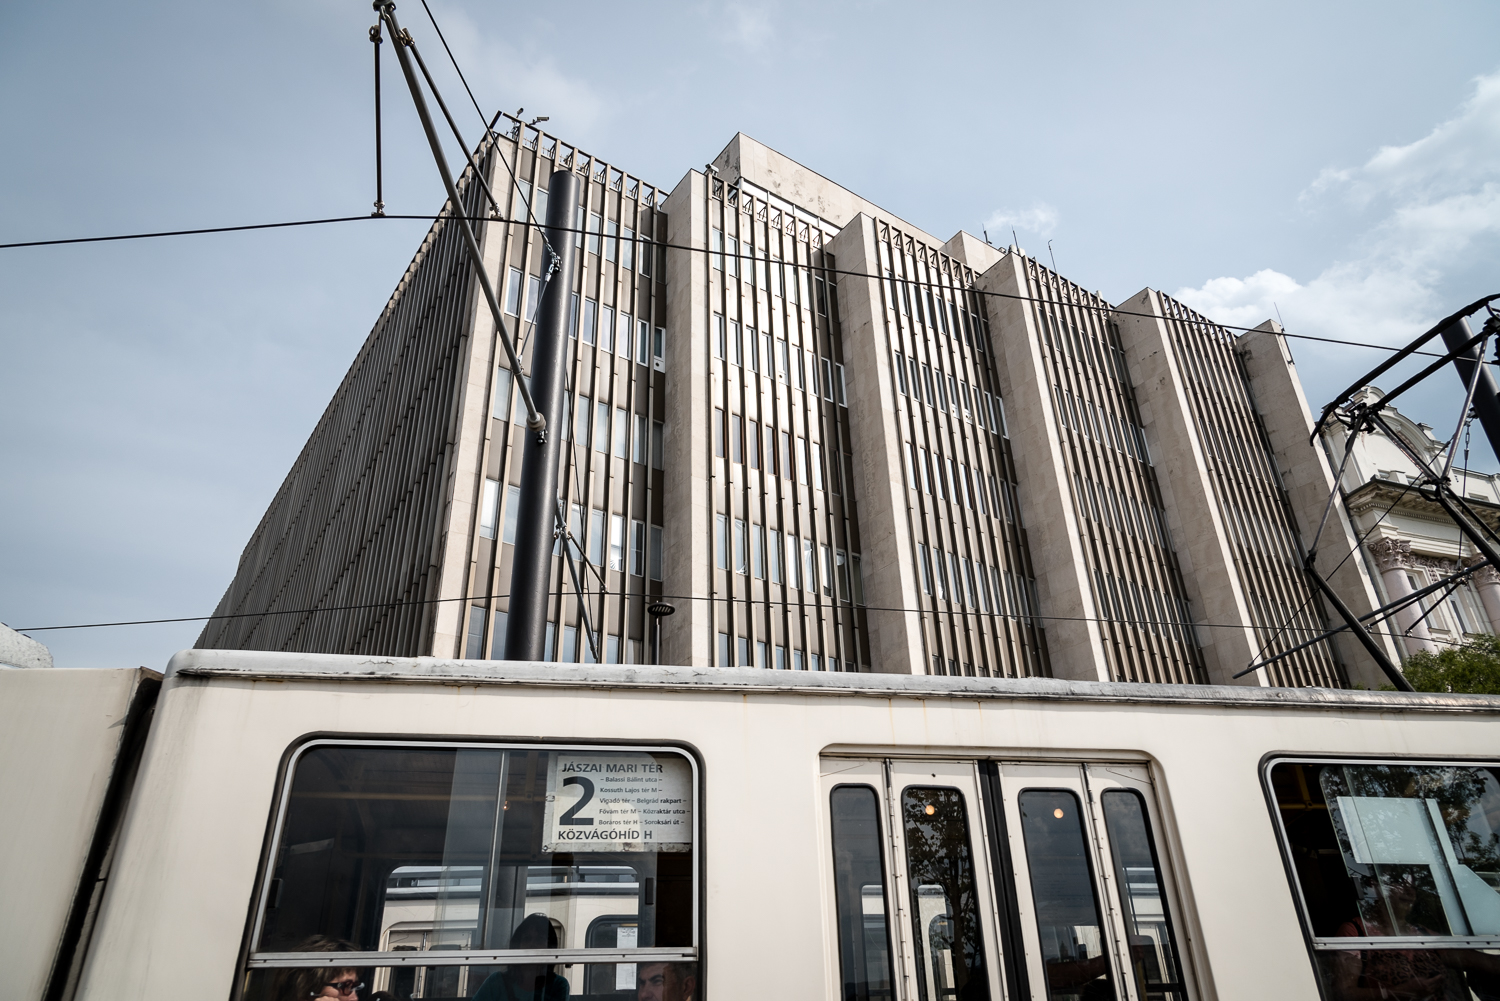 Ötletpályázat révén születik újjá a metró fölötti épület a Kossuth téren